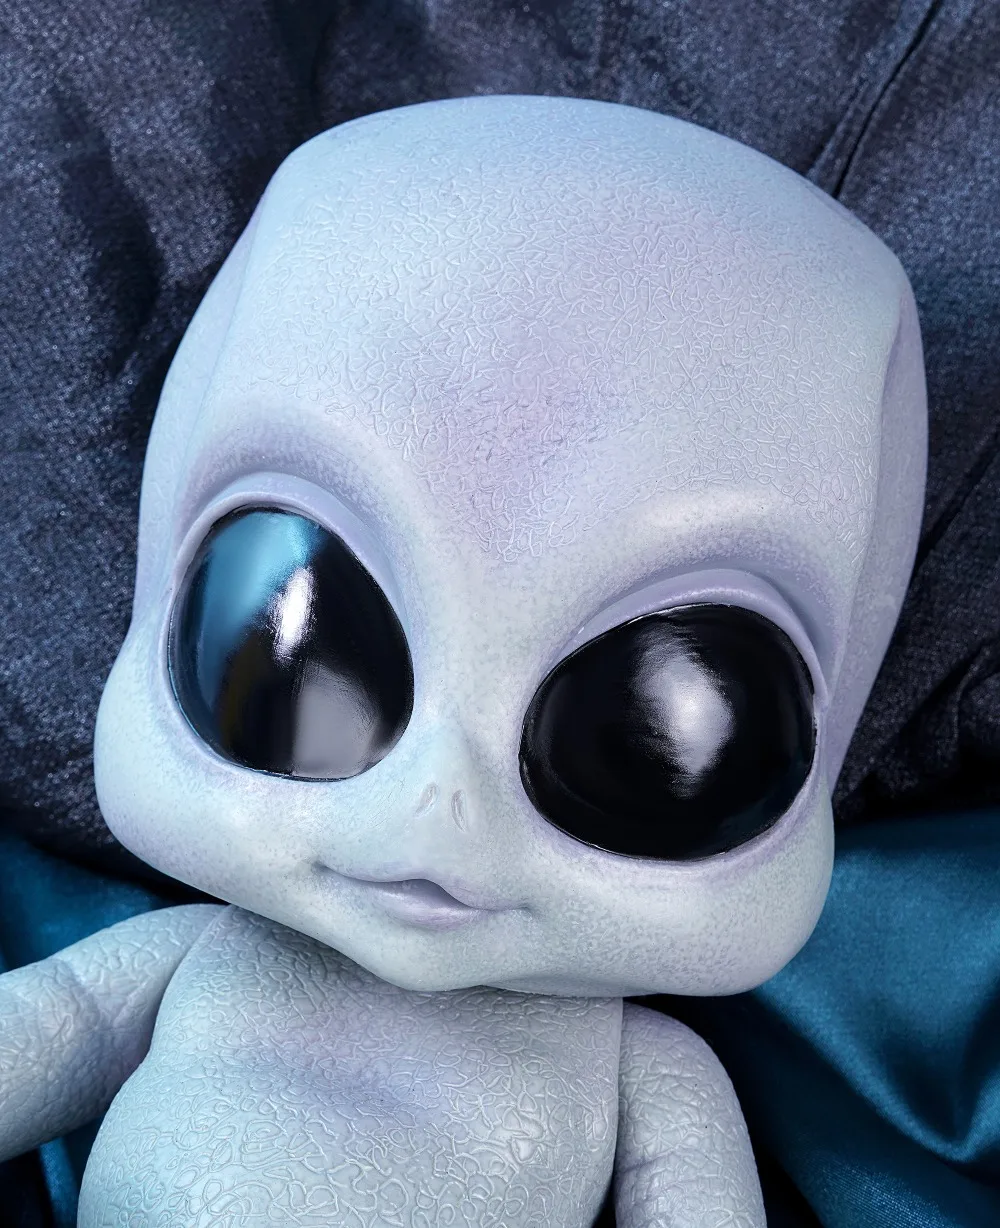 NPK 14 дюймов Реалистичная кукла-инопланетянин ручной детальный paiting виниловая игрушка Коллекционная детская